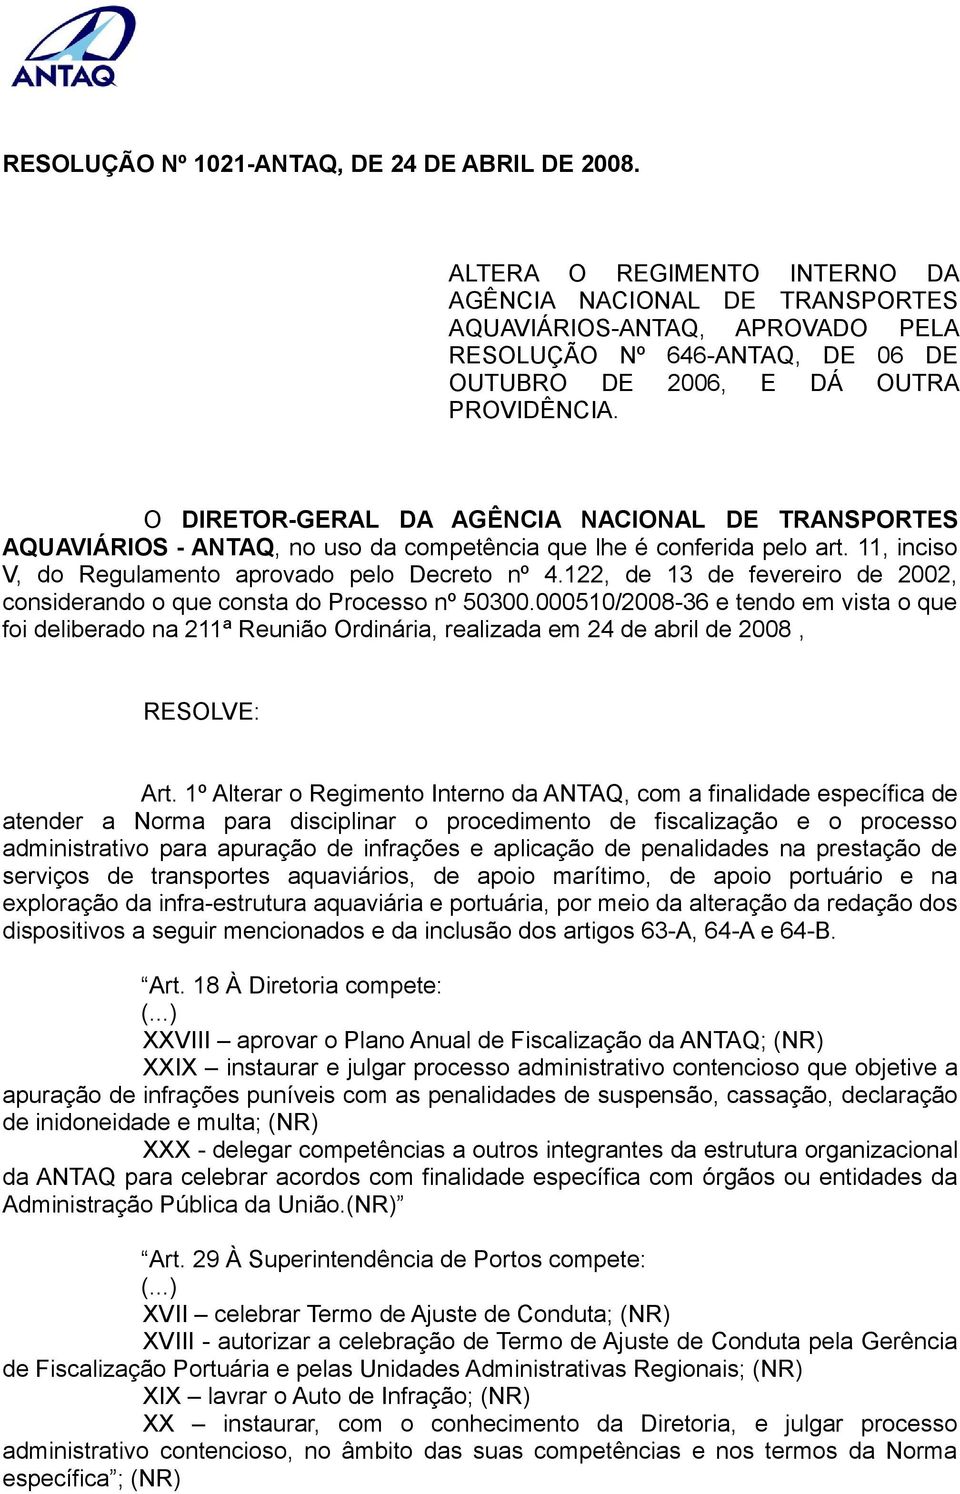 O DIRETOR-GERAL DA AGÊNCIA NACIONAL DE TRANSPORTES AQUAVIÁRIOS - ANTAQ, no uso da competência que lhe é conferida pelo art. 11, inciso V, do Regulamento aprovado pelo Decreto nº 4.